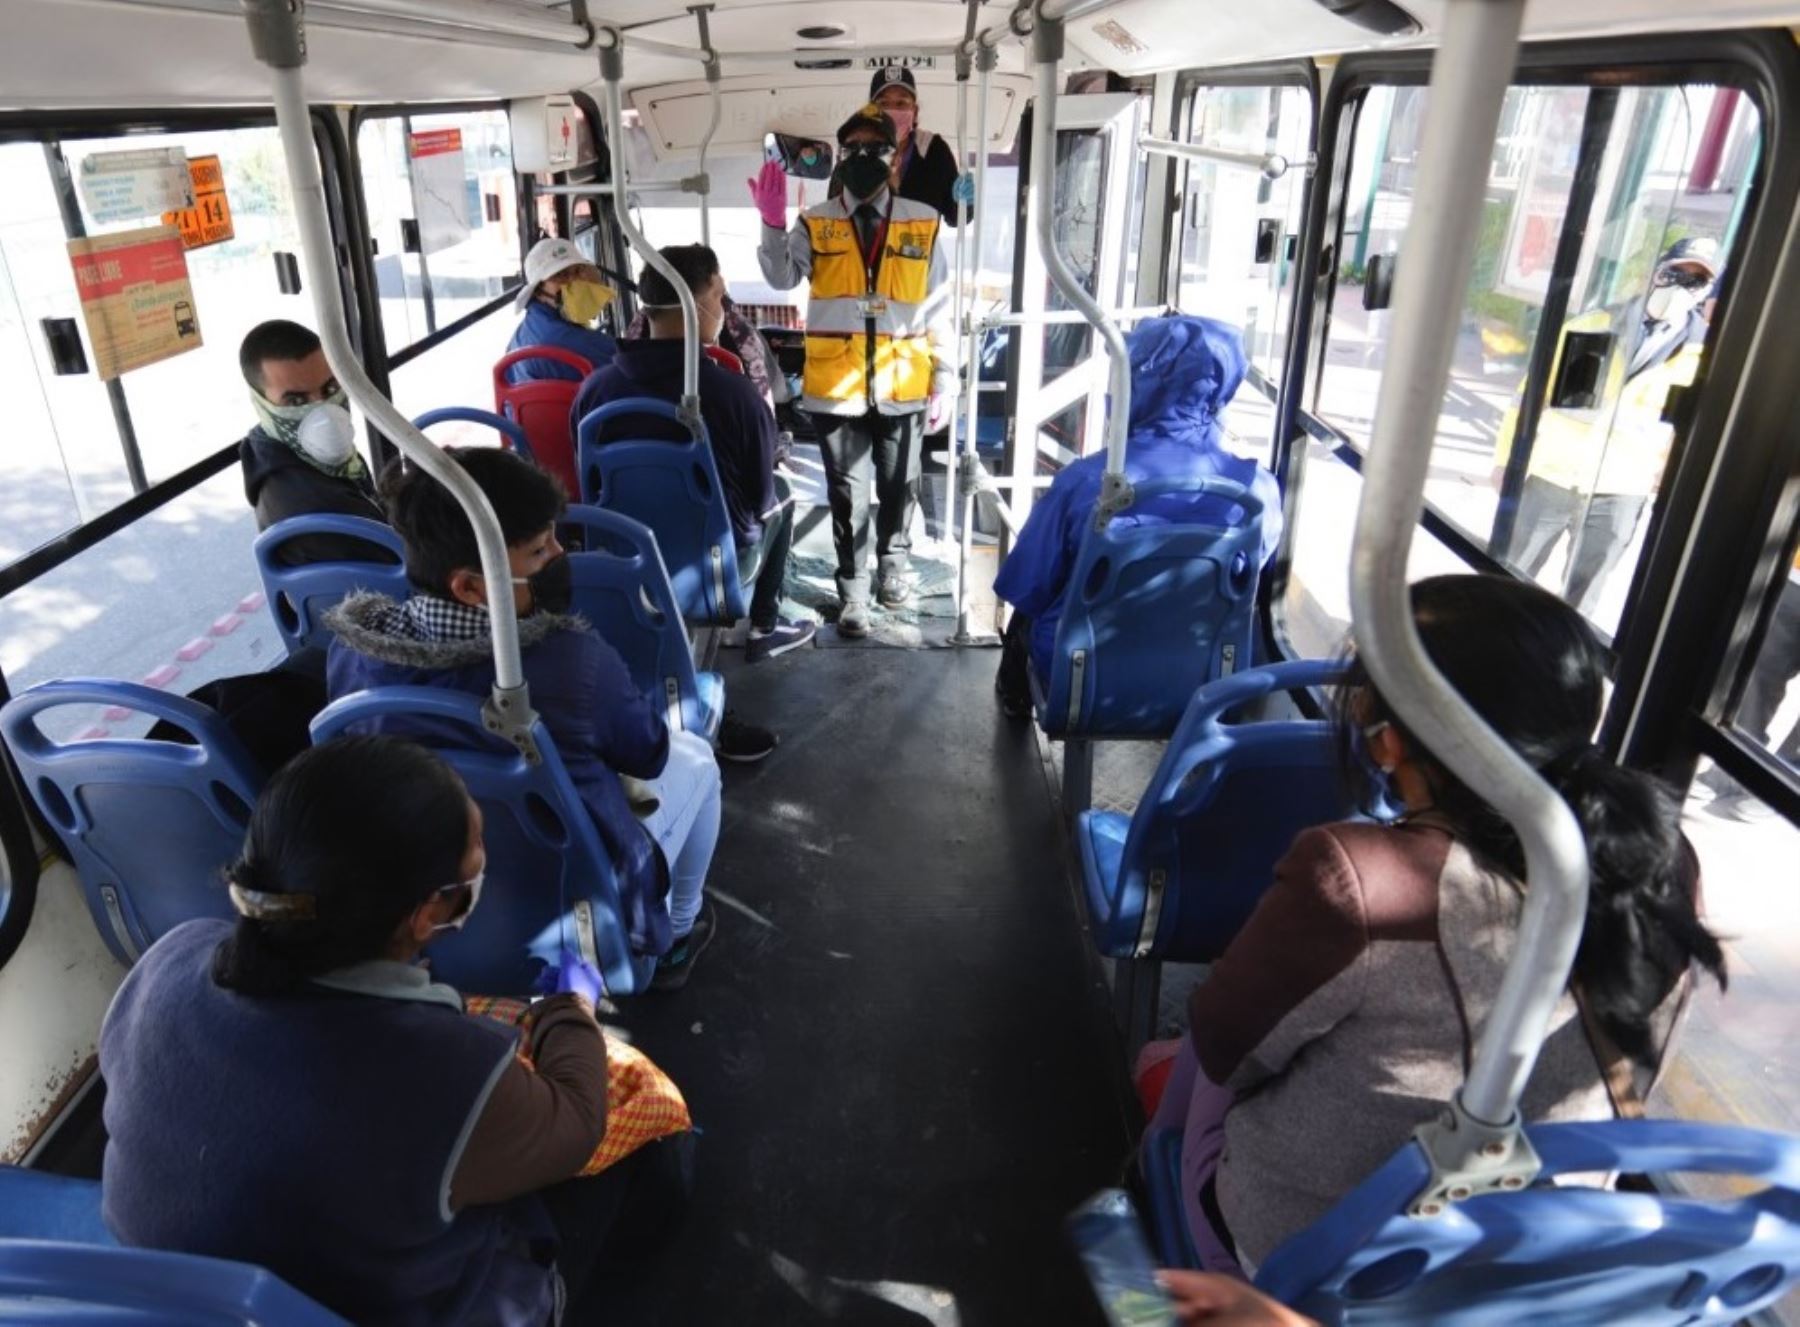 Los buses de transporte urbano de la ciudad de Cusco operarán con el 100 % de sus asientos a partir del lunes 20 de julio, anunció la municipalidad provincial. Foto: ANDINA/difusión.